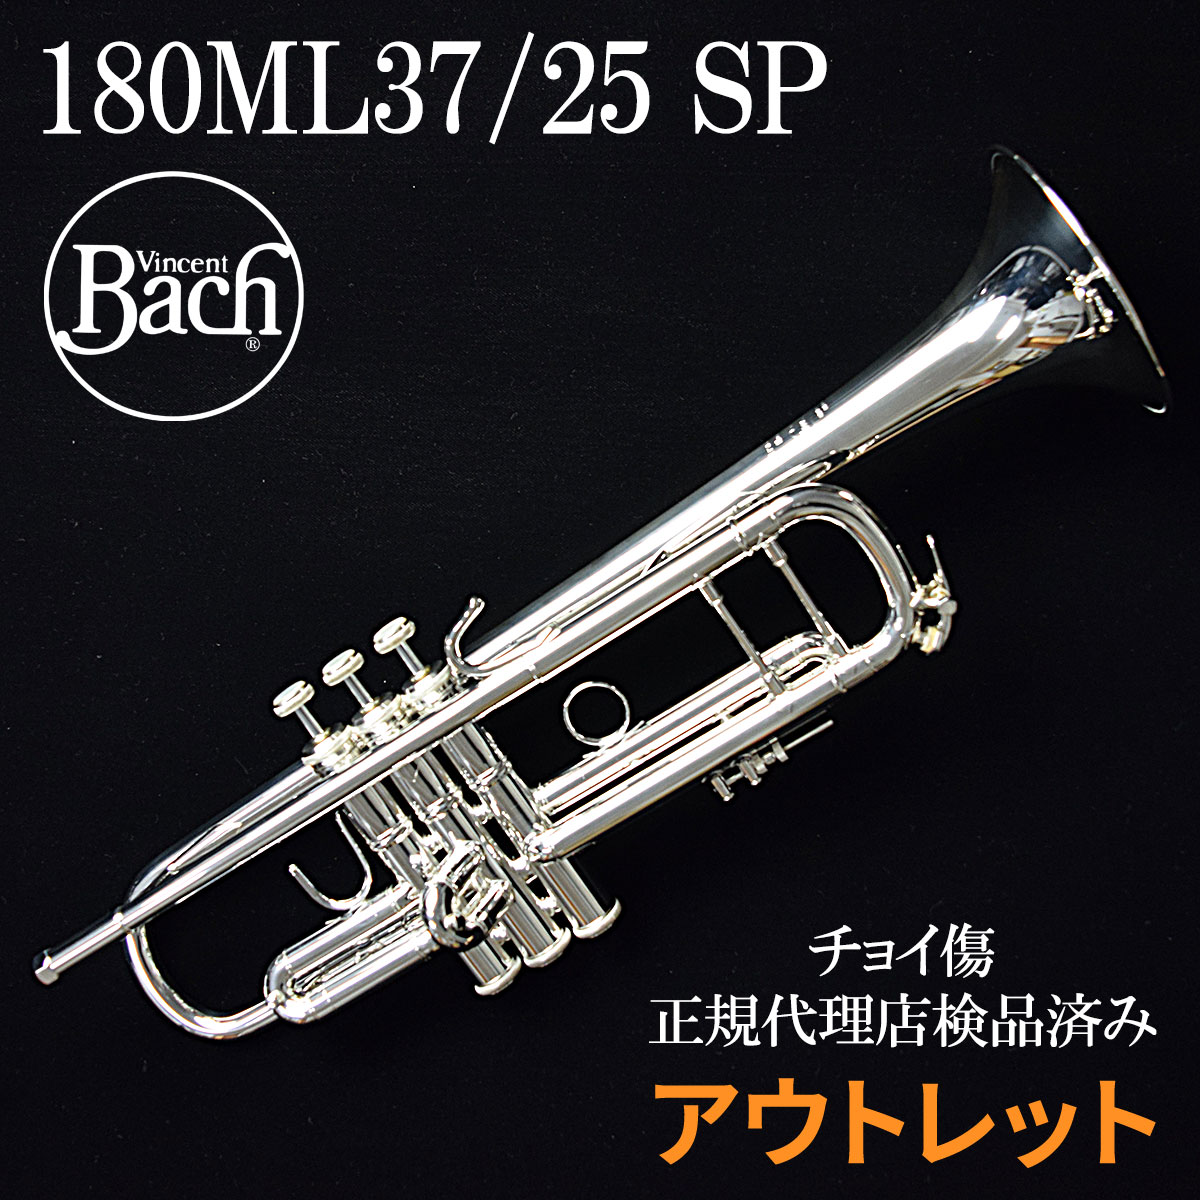 Bach 180ML37/25/SP B♭トランペット 【 バック 773036 】【ピストン付近にチョイ傷あり】